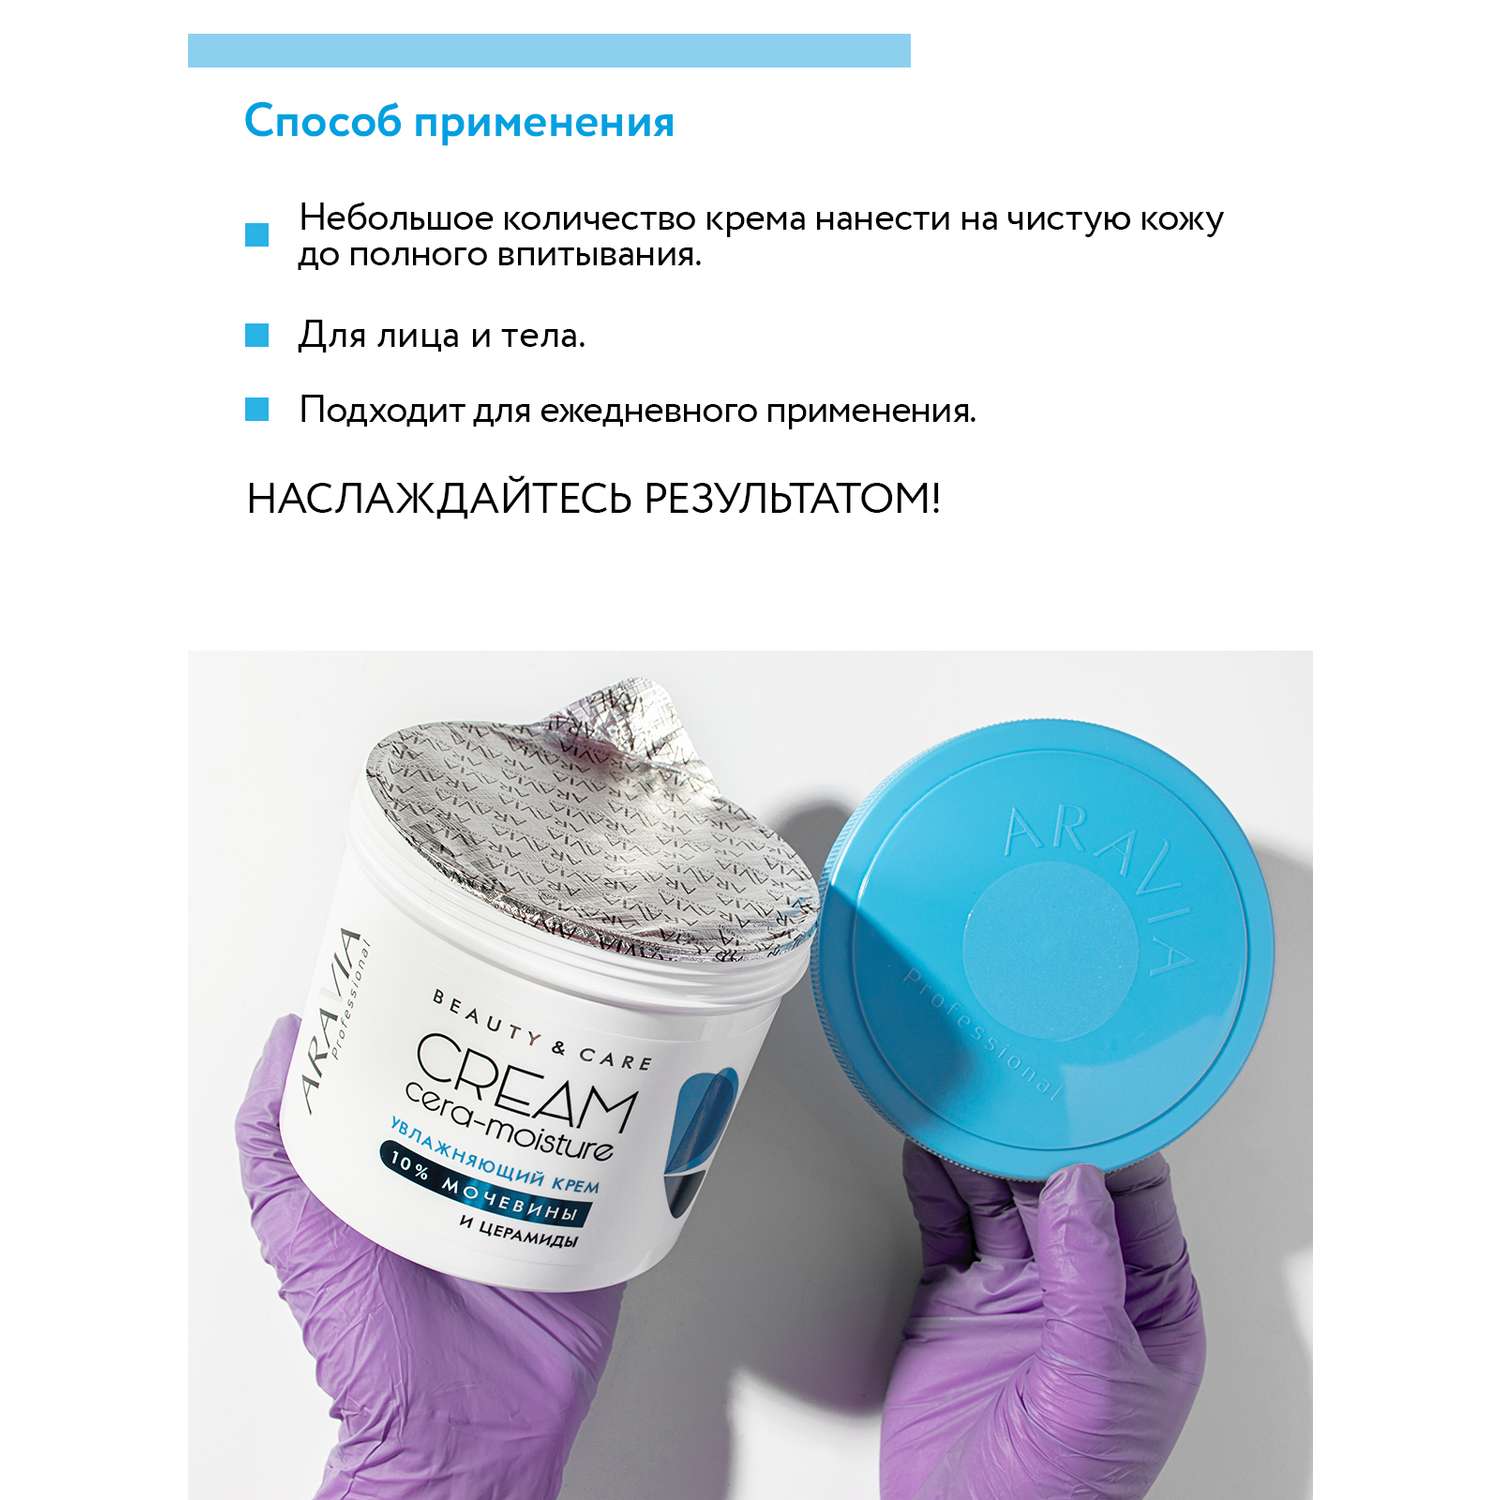 Крем для лица ARAVIA Professional увлажняющий с церамидами и мочевиной 10% Cera-moisture Cream - фото 5